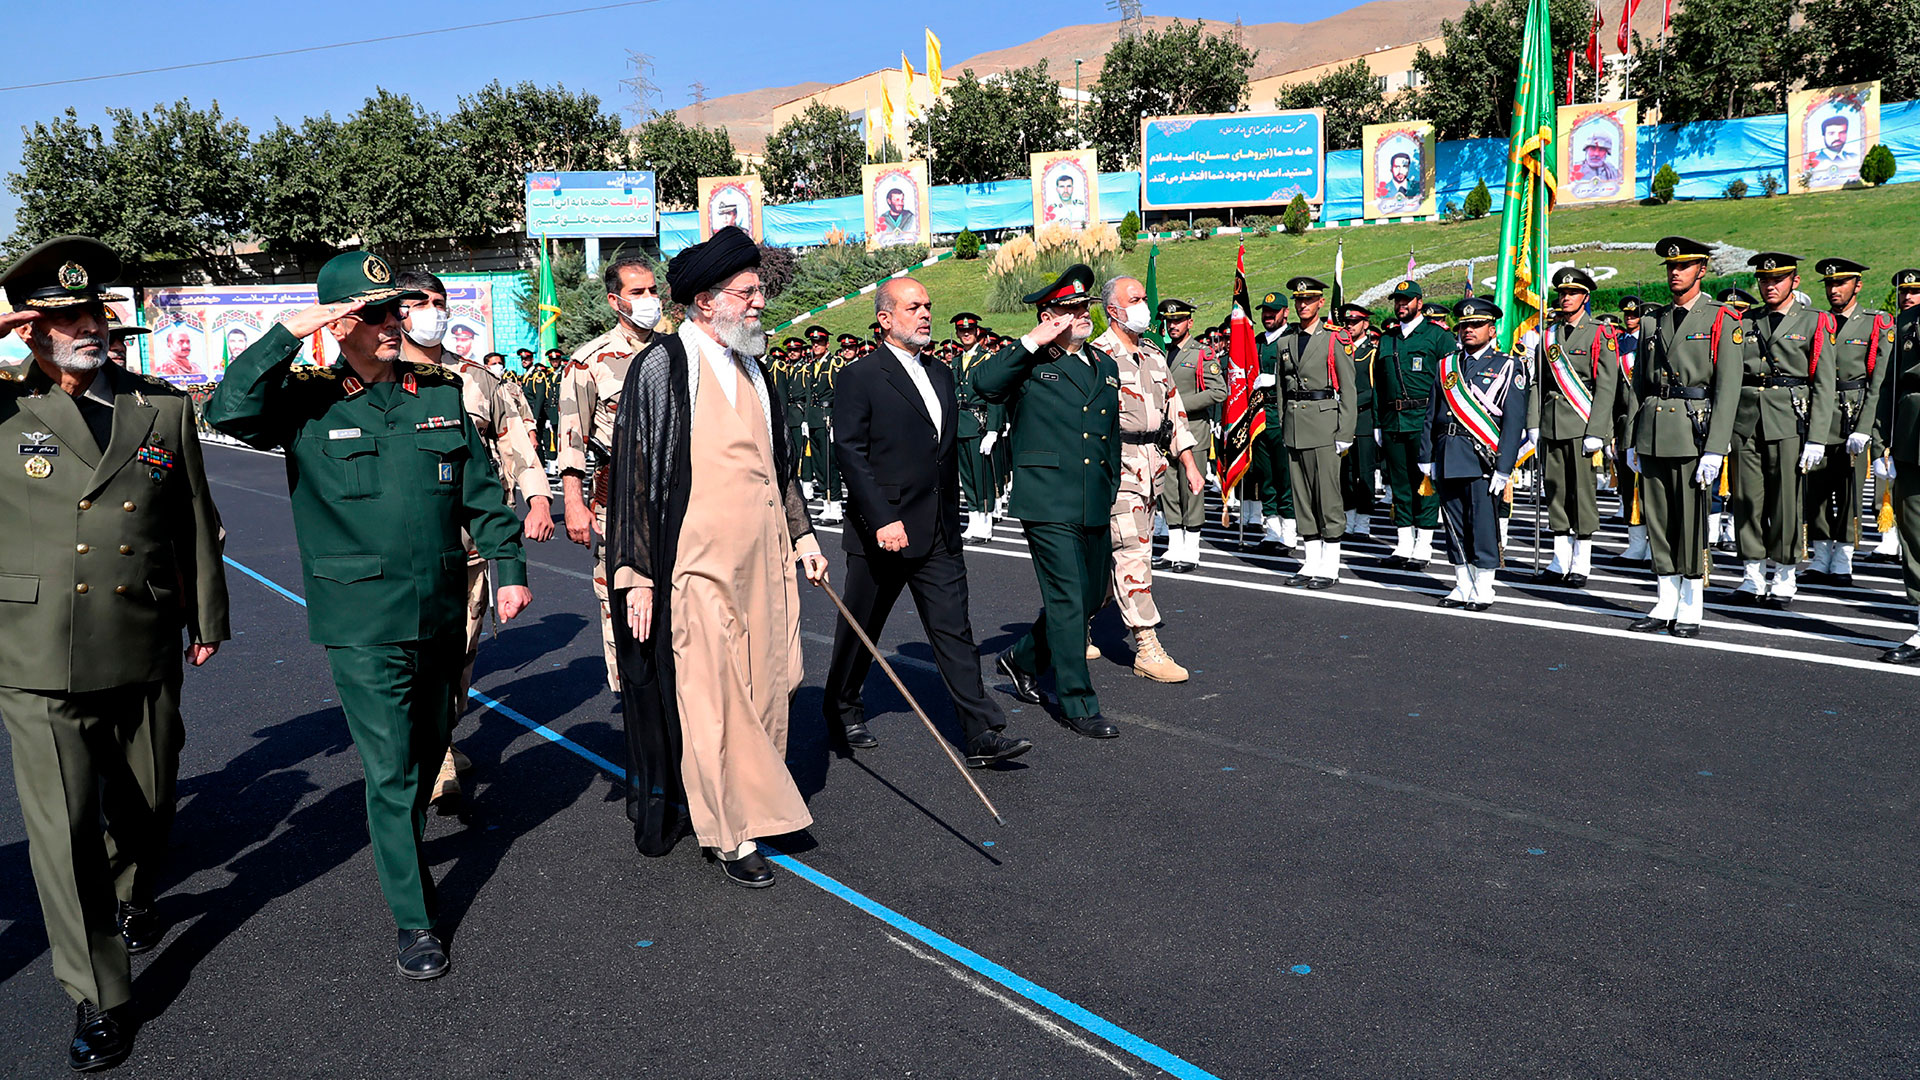 Khamenei respondió públicamente el lunes a las mayores protestas en Irán en años, rompiendo semanas de silencio para condenar lo que llamó “disturbios” y acusar a Estados Unidos e Israel de planificar las protestas. (Oficina del Líder Supremo iraní vía AP)